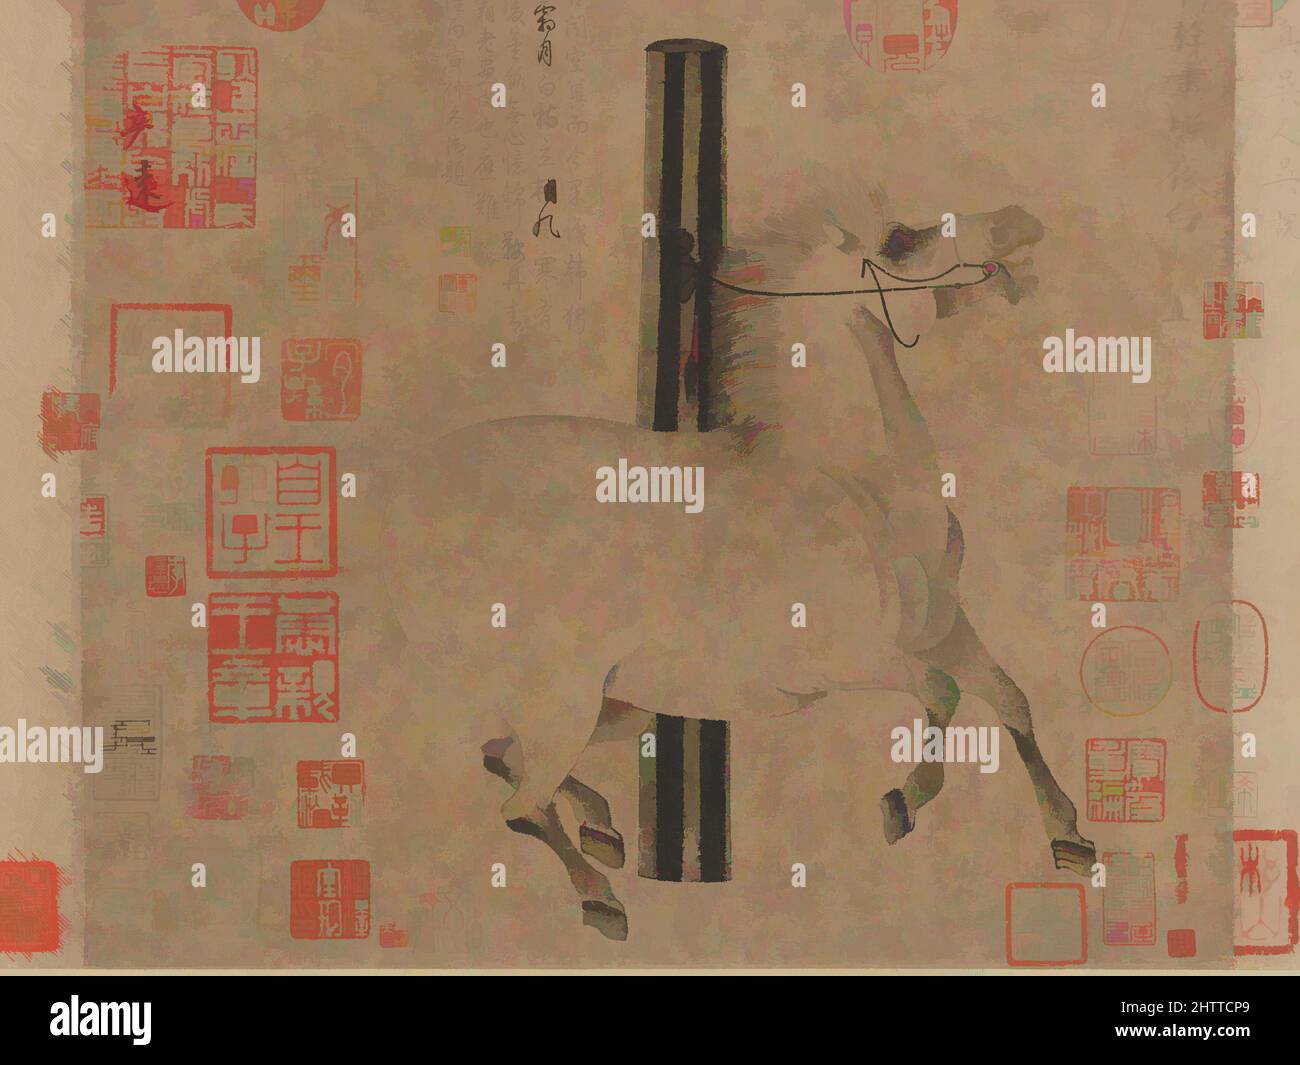 Arte ispirata al bianco notturno, 唐 韓幹 照夜白圖 卷, dinastia Tang (618–907), ca. 750, Cina, scorrimento a mano; inchiostro su carta, immagine: 12 1/8 x 13 3/8 pollici (30,8 x 34 cm), dipinti, Han Gan (cinese, attivo ca. 742–756), un pittore di cavalli leader della dinastia Tang, Han Gan era noto per la cattura, opere classiche modernizzate da Artotop con un tuffo di modernità. Forme, colore e valore, impatto visivo accattivante sulle emozioni artistiche attraverso la libertà delle opere d'arte in modo contemporaneo. Un messaggio senza tempo che persegue una nuova direzione selvaggiamente creativa. Artisti che si rivolgono al supporto digitale e creano l'NFT Artotop Foto Stock